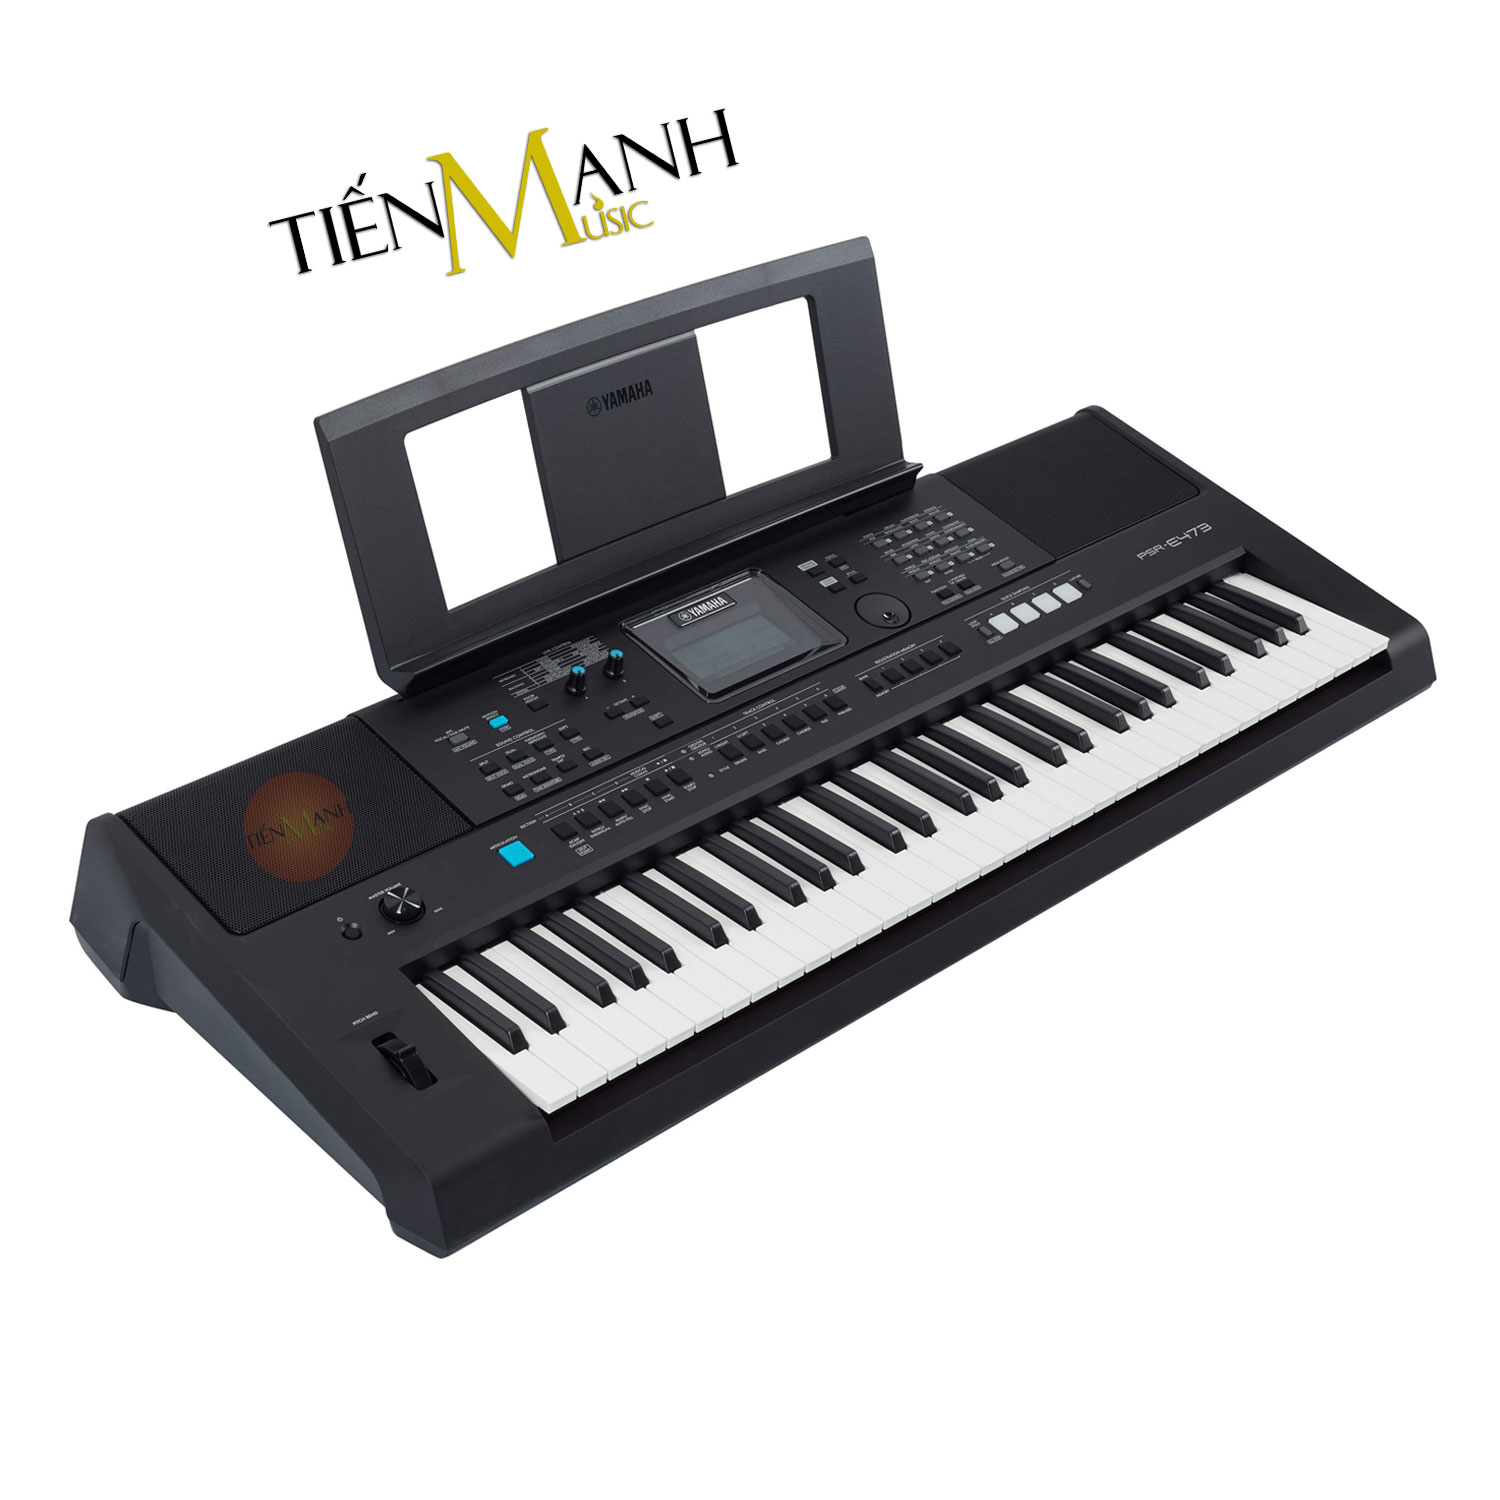 Cach-su-dung-Bo-Dan-Organ-Yamaha-PSR-E473-Tiki